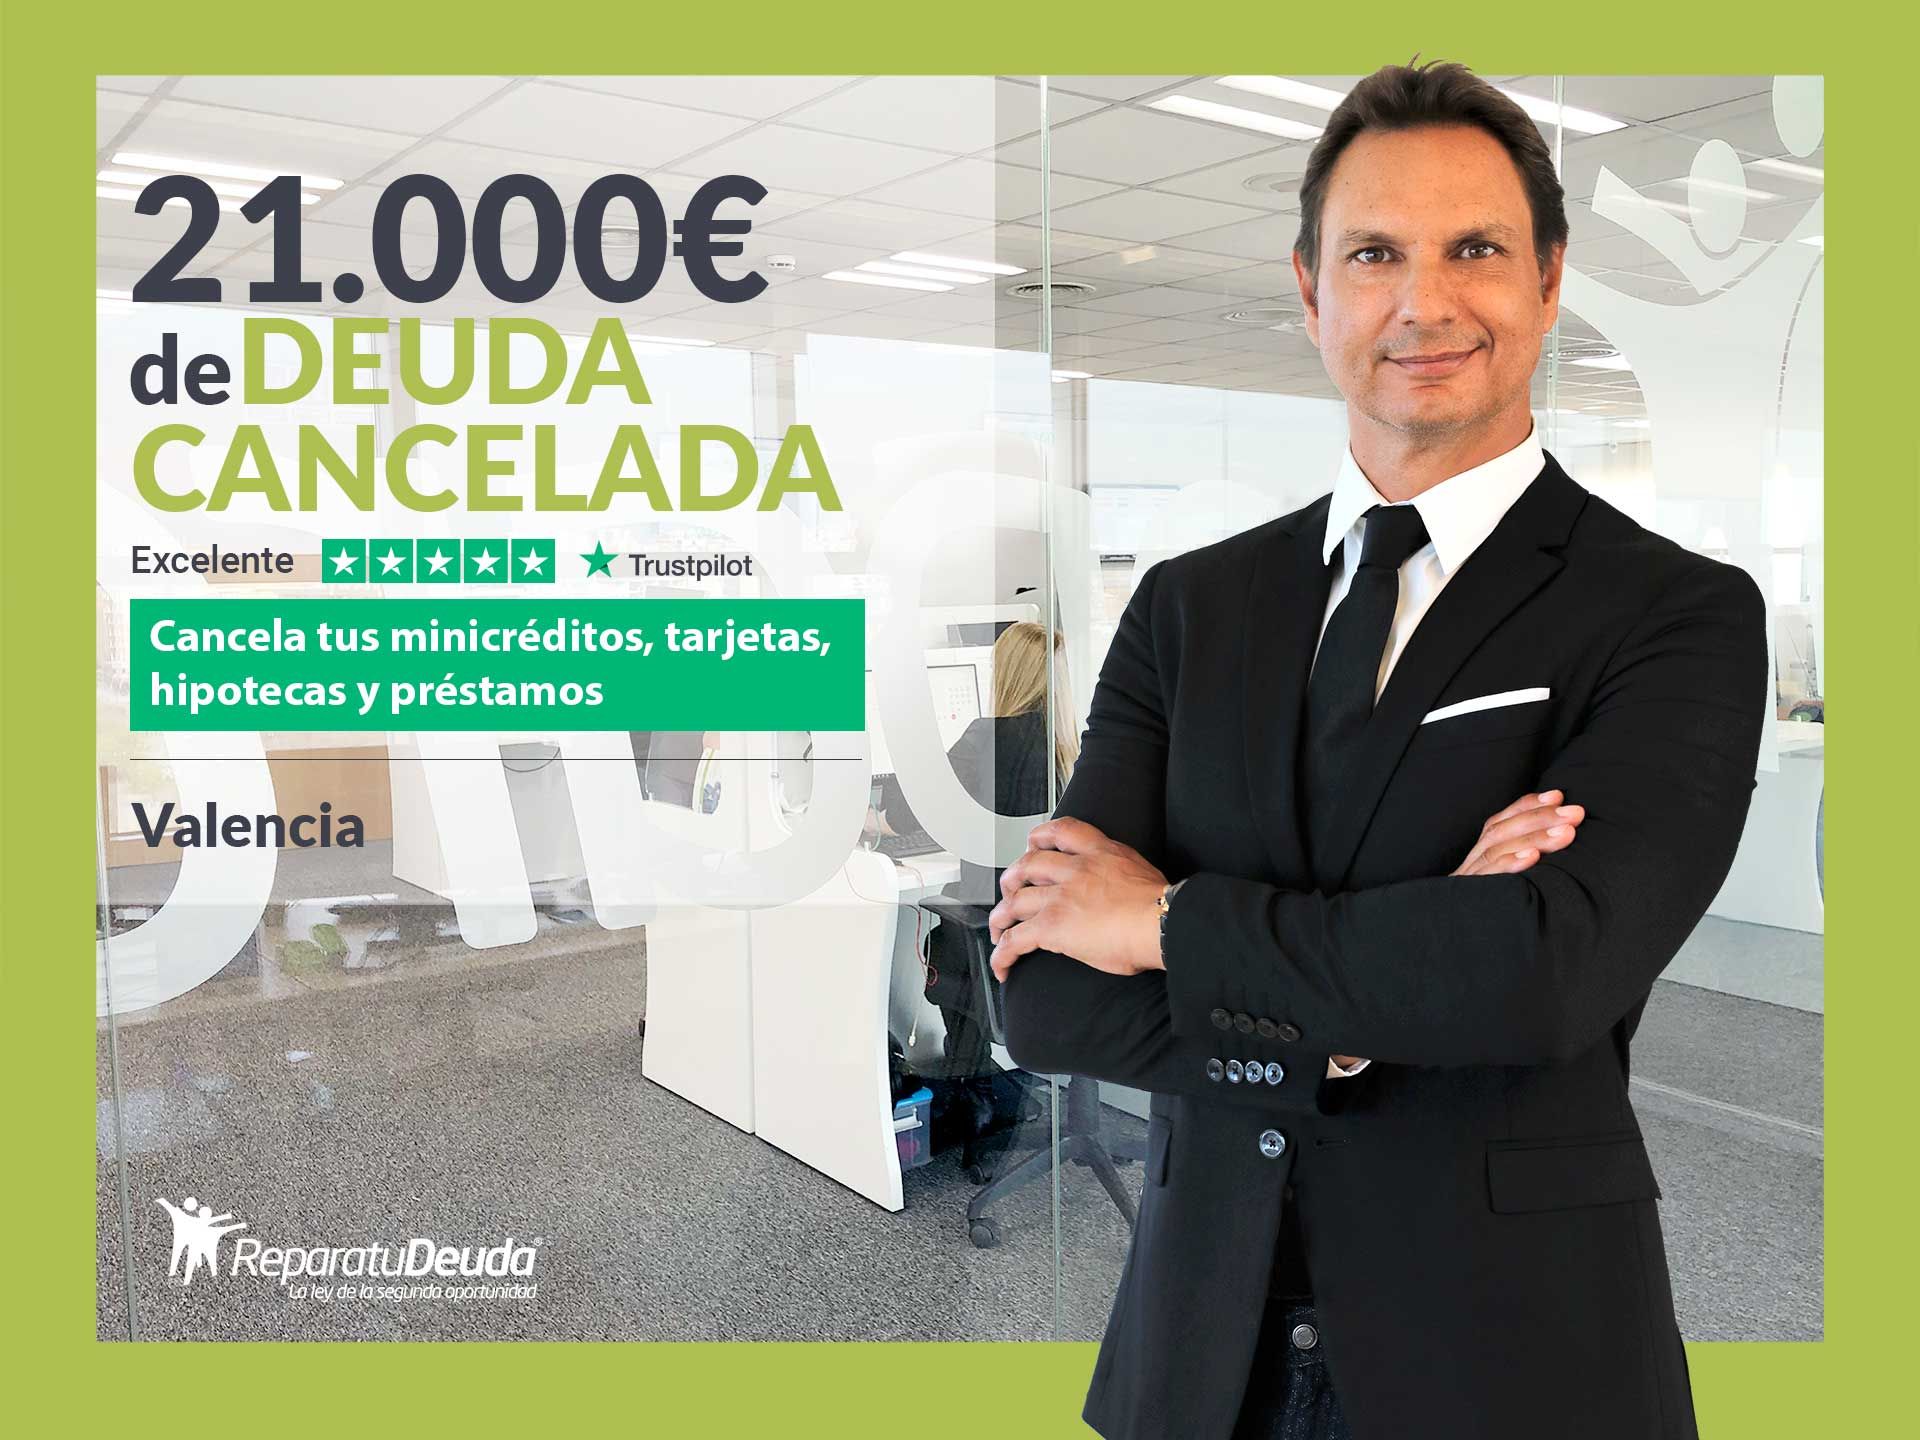 Repara tu Deuda Abogados cancela 21.000? en Valencia con la Ley de Segunda Oportunidad